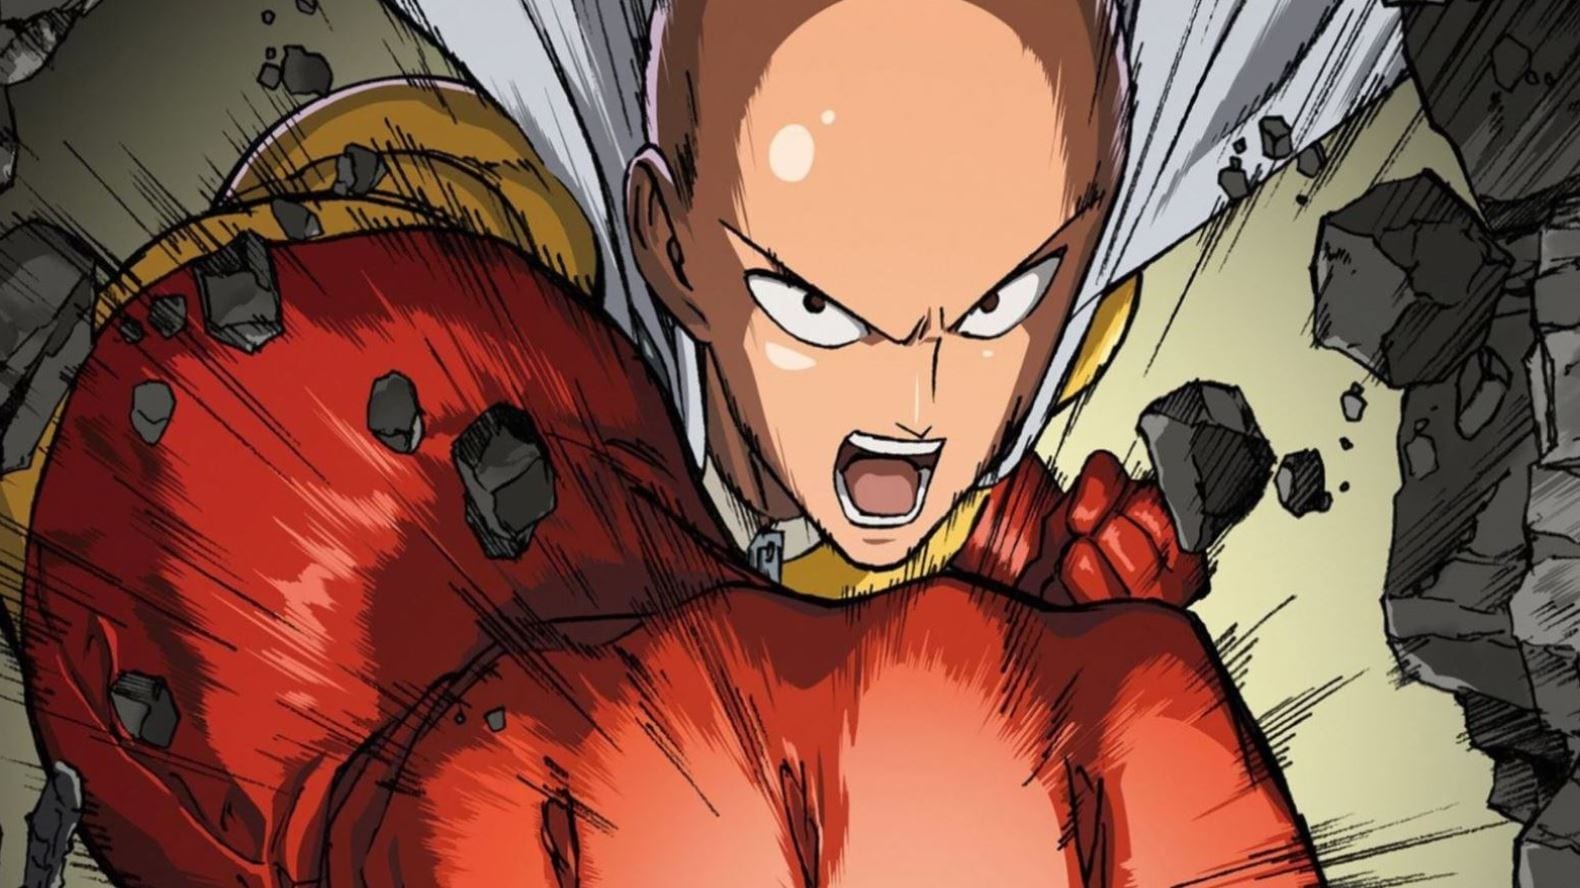 One Punch Man Season 3 Announced : r/anime